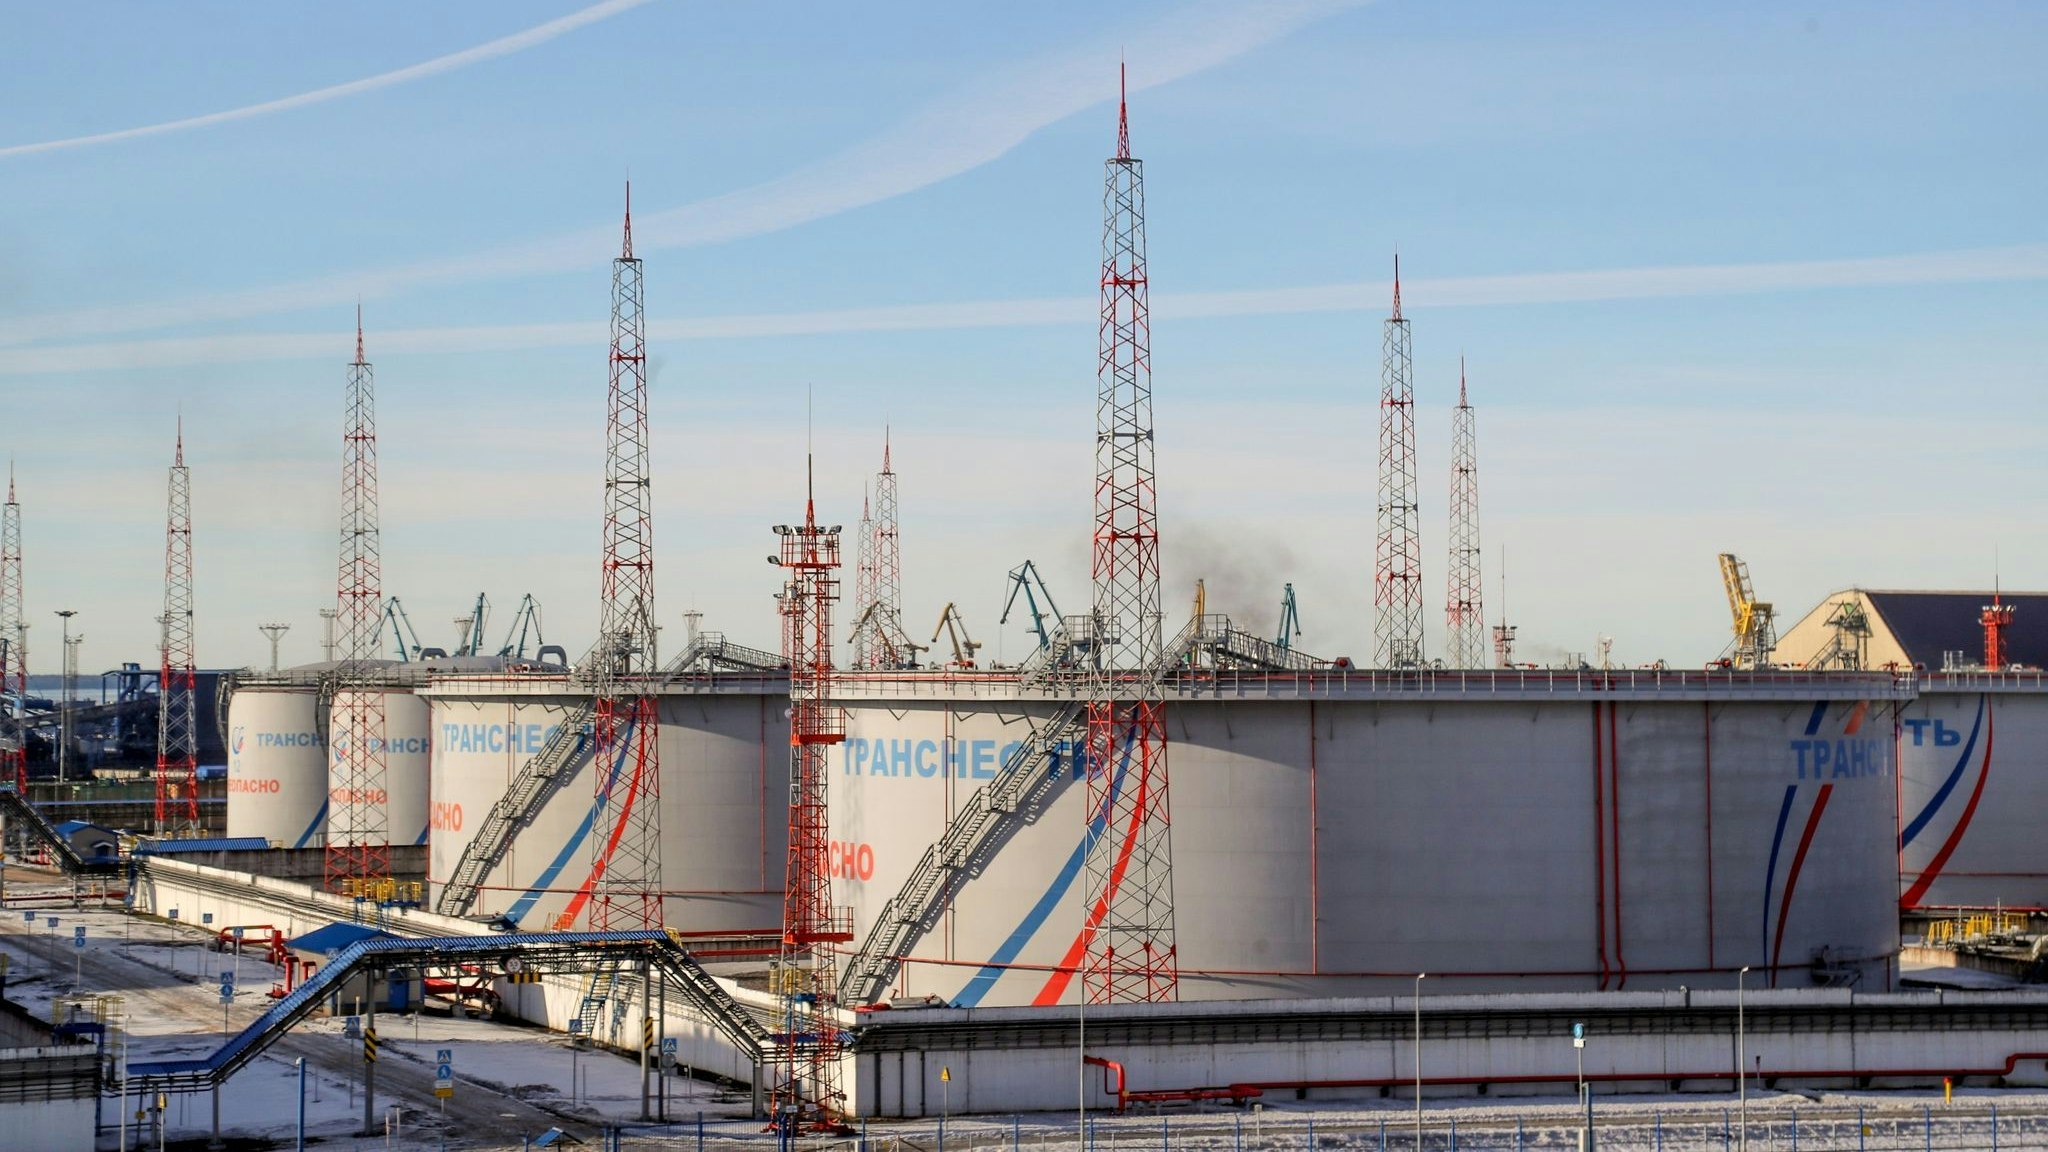 Tanks von Transneft im Ölterminal von Ust-Luga. Das staatliche russische Unternehmen betreibt die Erdöl-Pipelines des Landes. Foto: dpa/Stringer